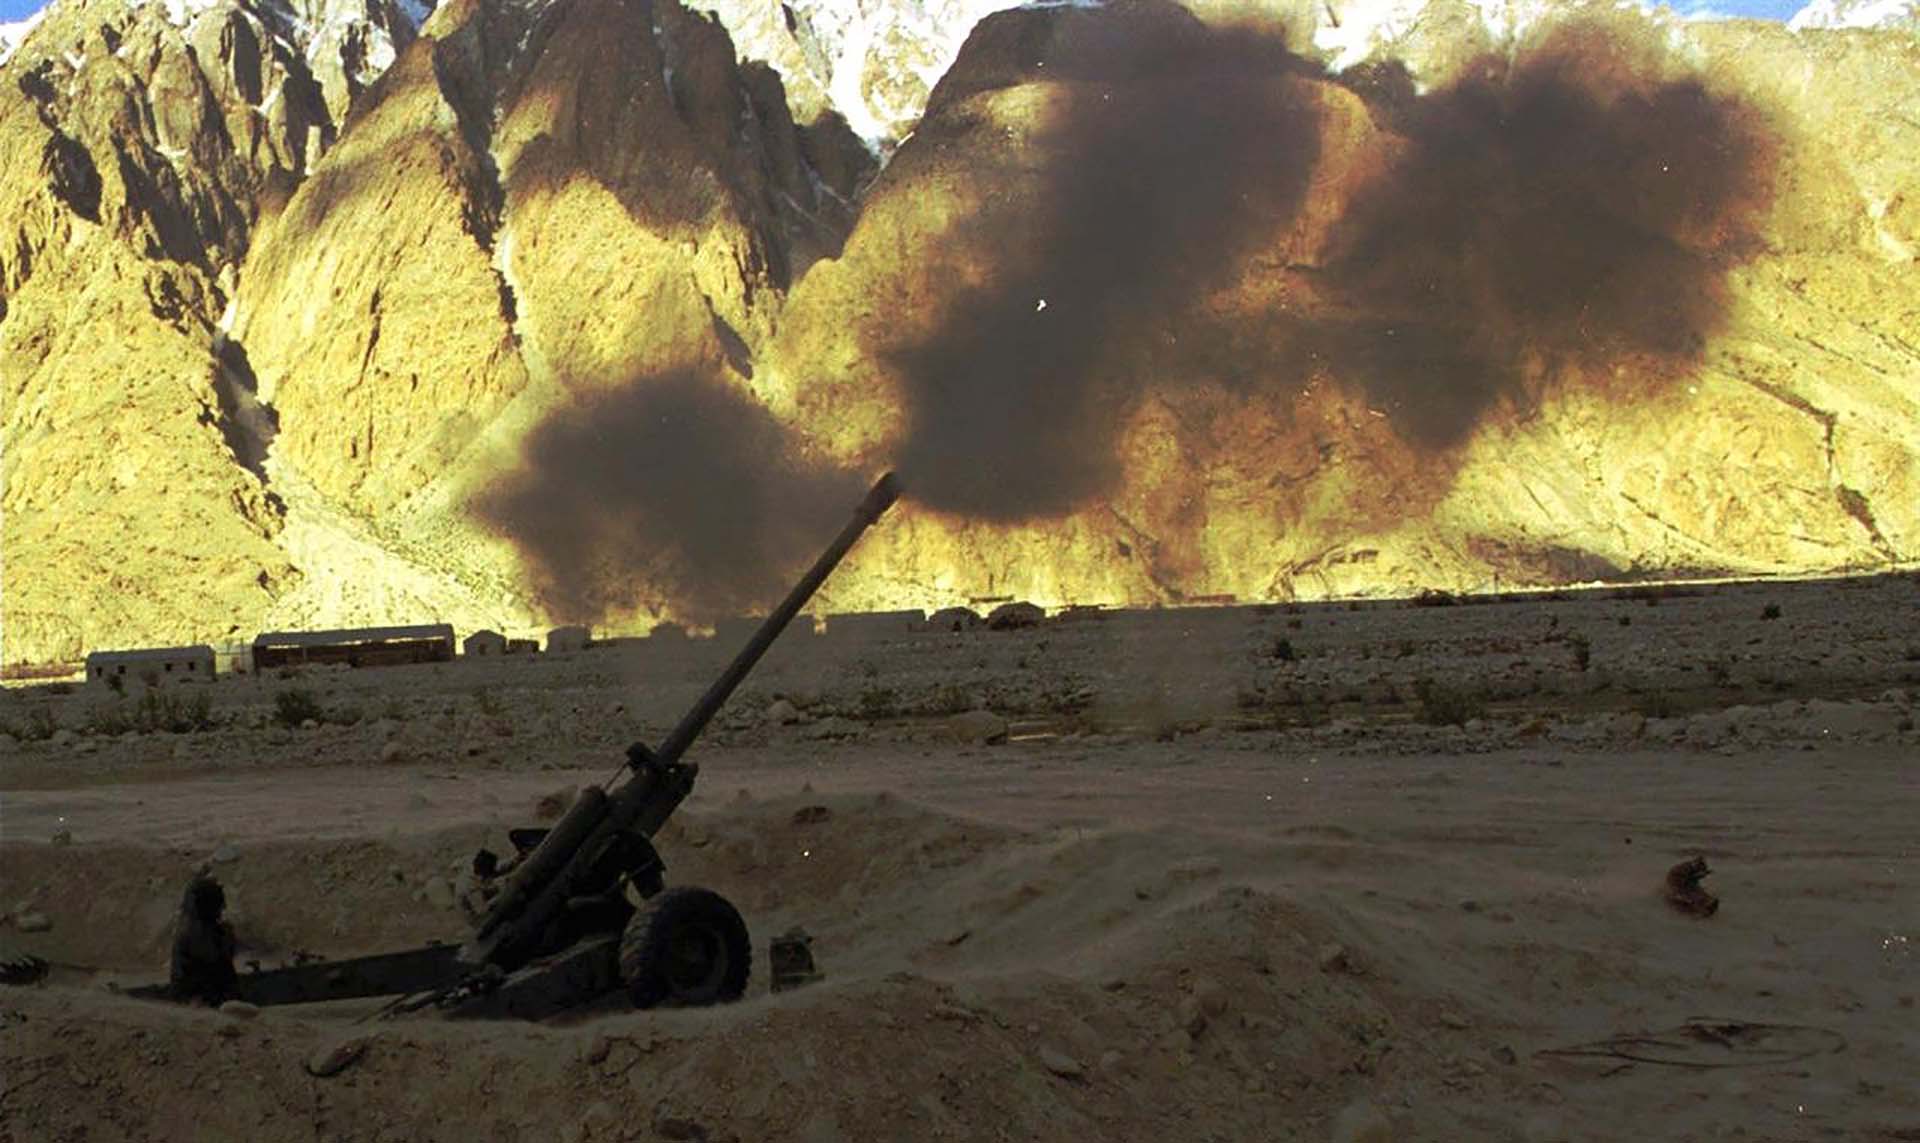 Soldados indios disparan fuego de artillería contra las tropas paquistaníes en el glaciar Siachen en 1998. Los enfrentamientos estallaron después que los dos países hicieran pruebas nucleares en la zona el mes anterior. (AP Photo/Aijaz Rahi, archivo)